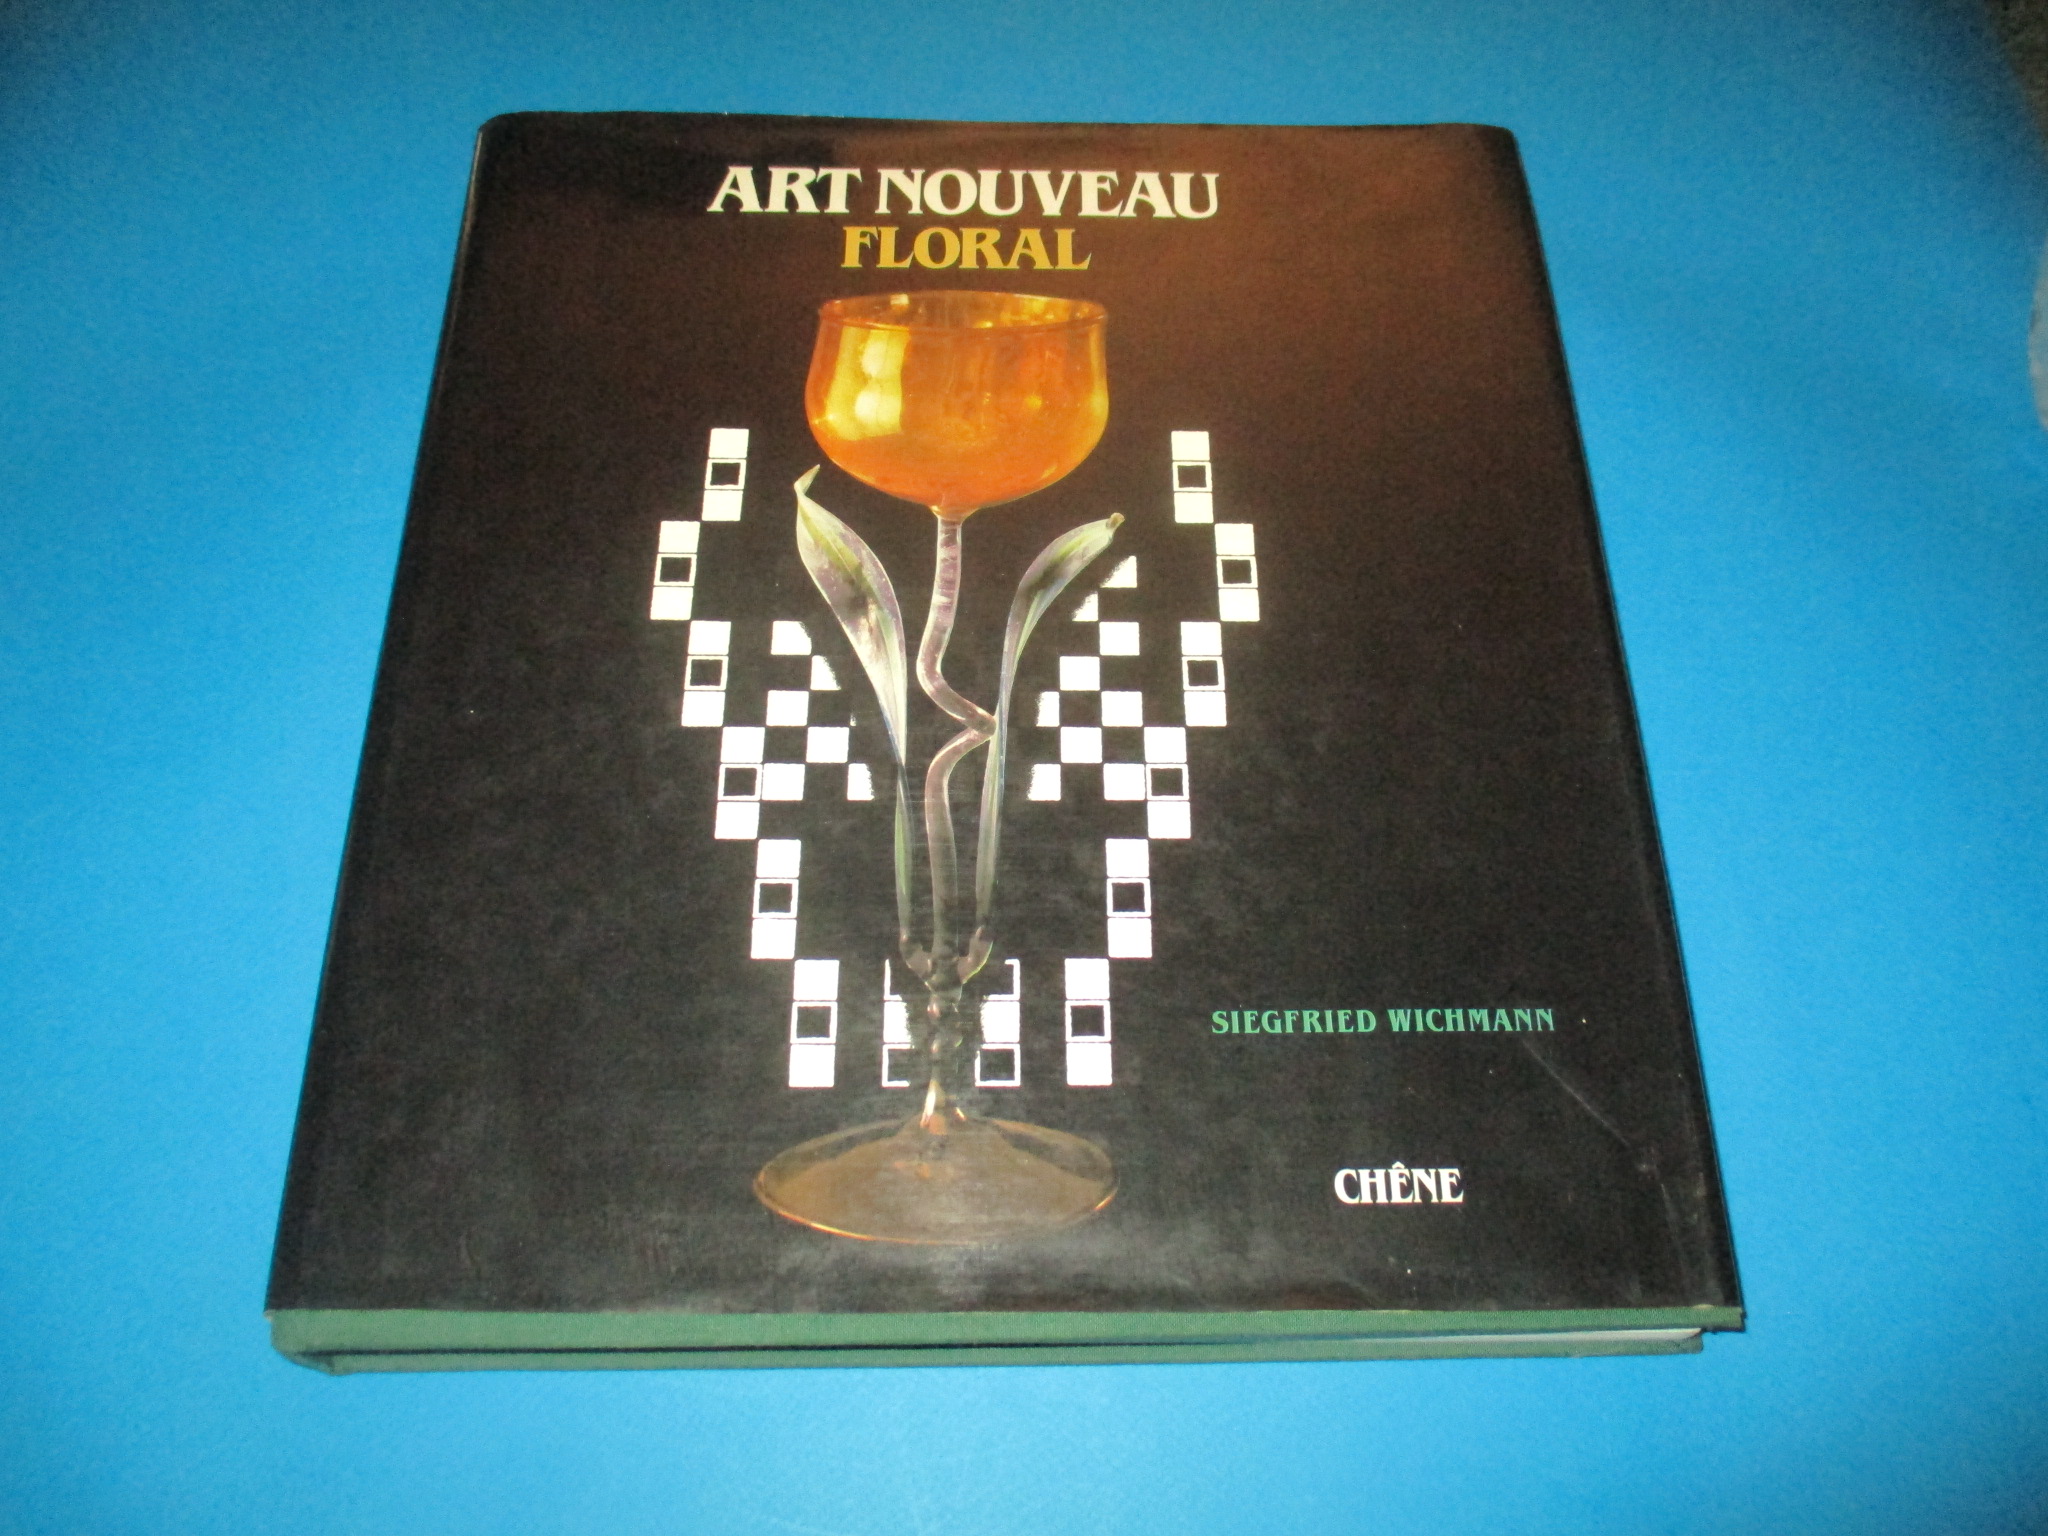 Art Nouveau Floral, Siegfried Wichmann, Chêne